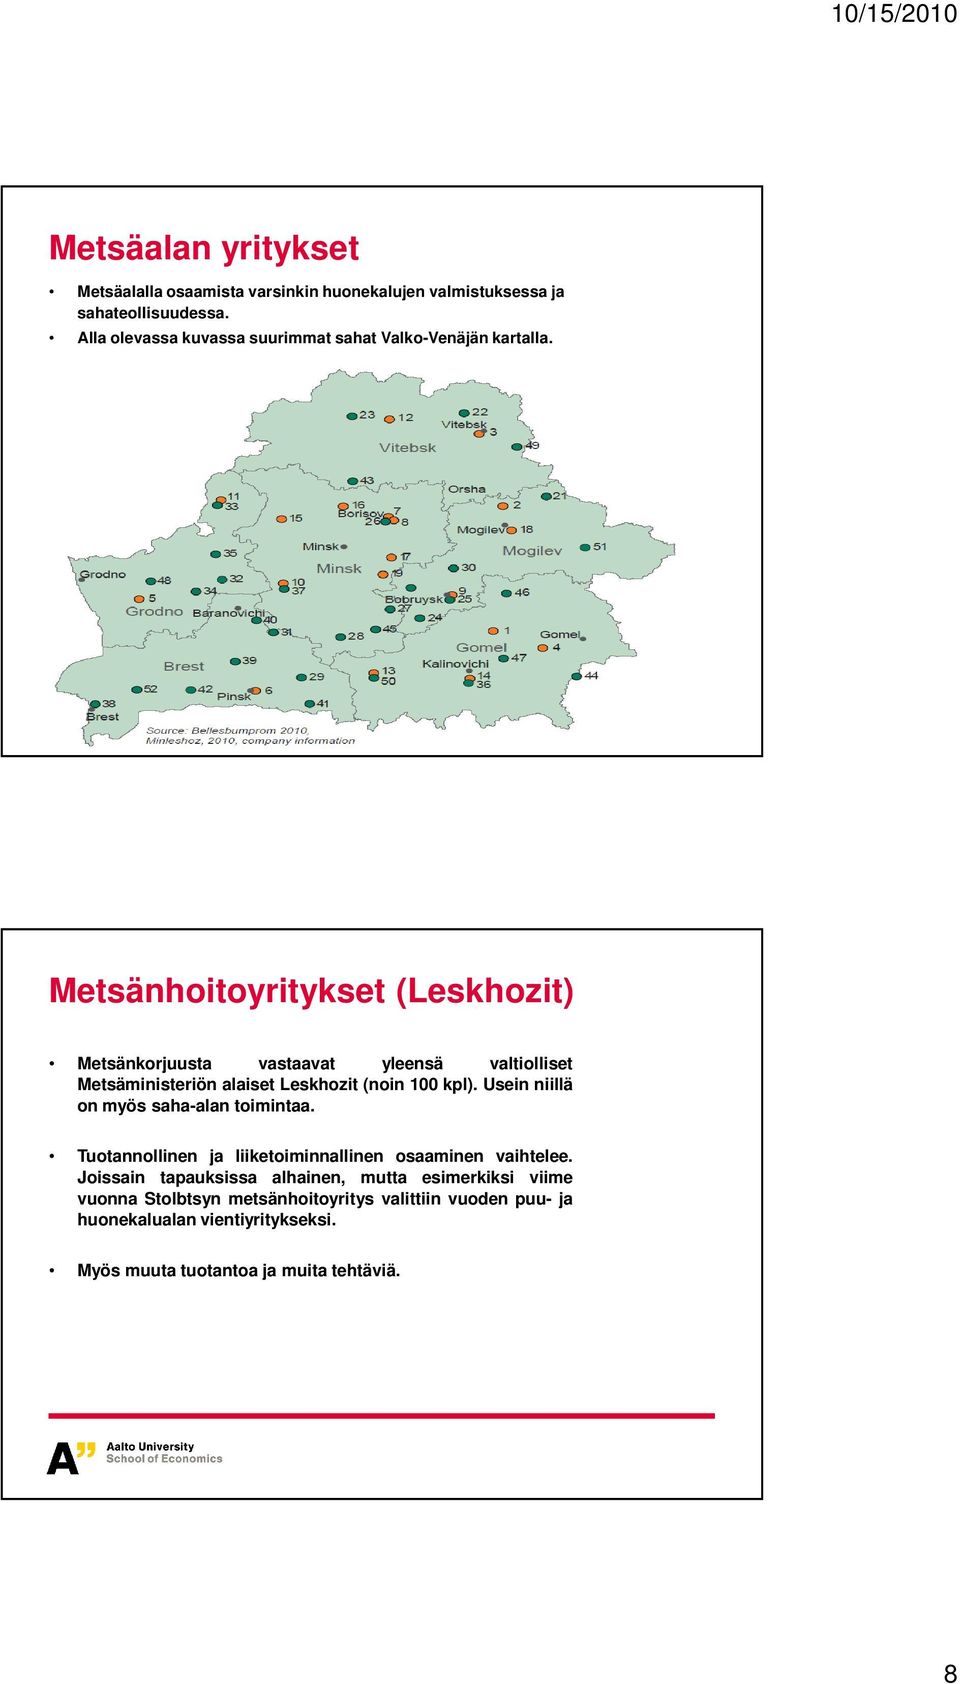 Metsänhoitoyritykset (Leskhozit) Metsänkorjuusta vastaavat yleensä valtiolliset Metsäministeriön alaiset Leskhozit (noin 100 kpl).